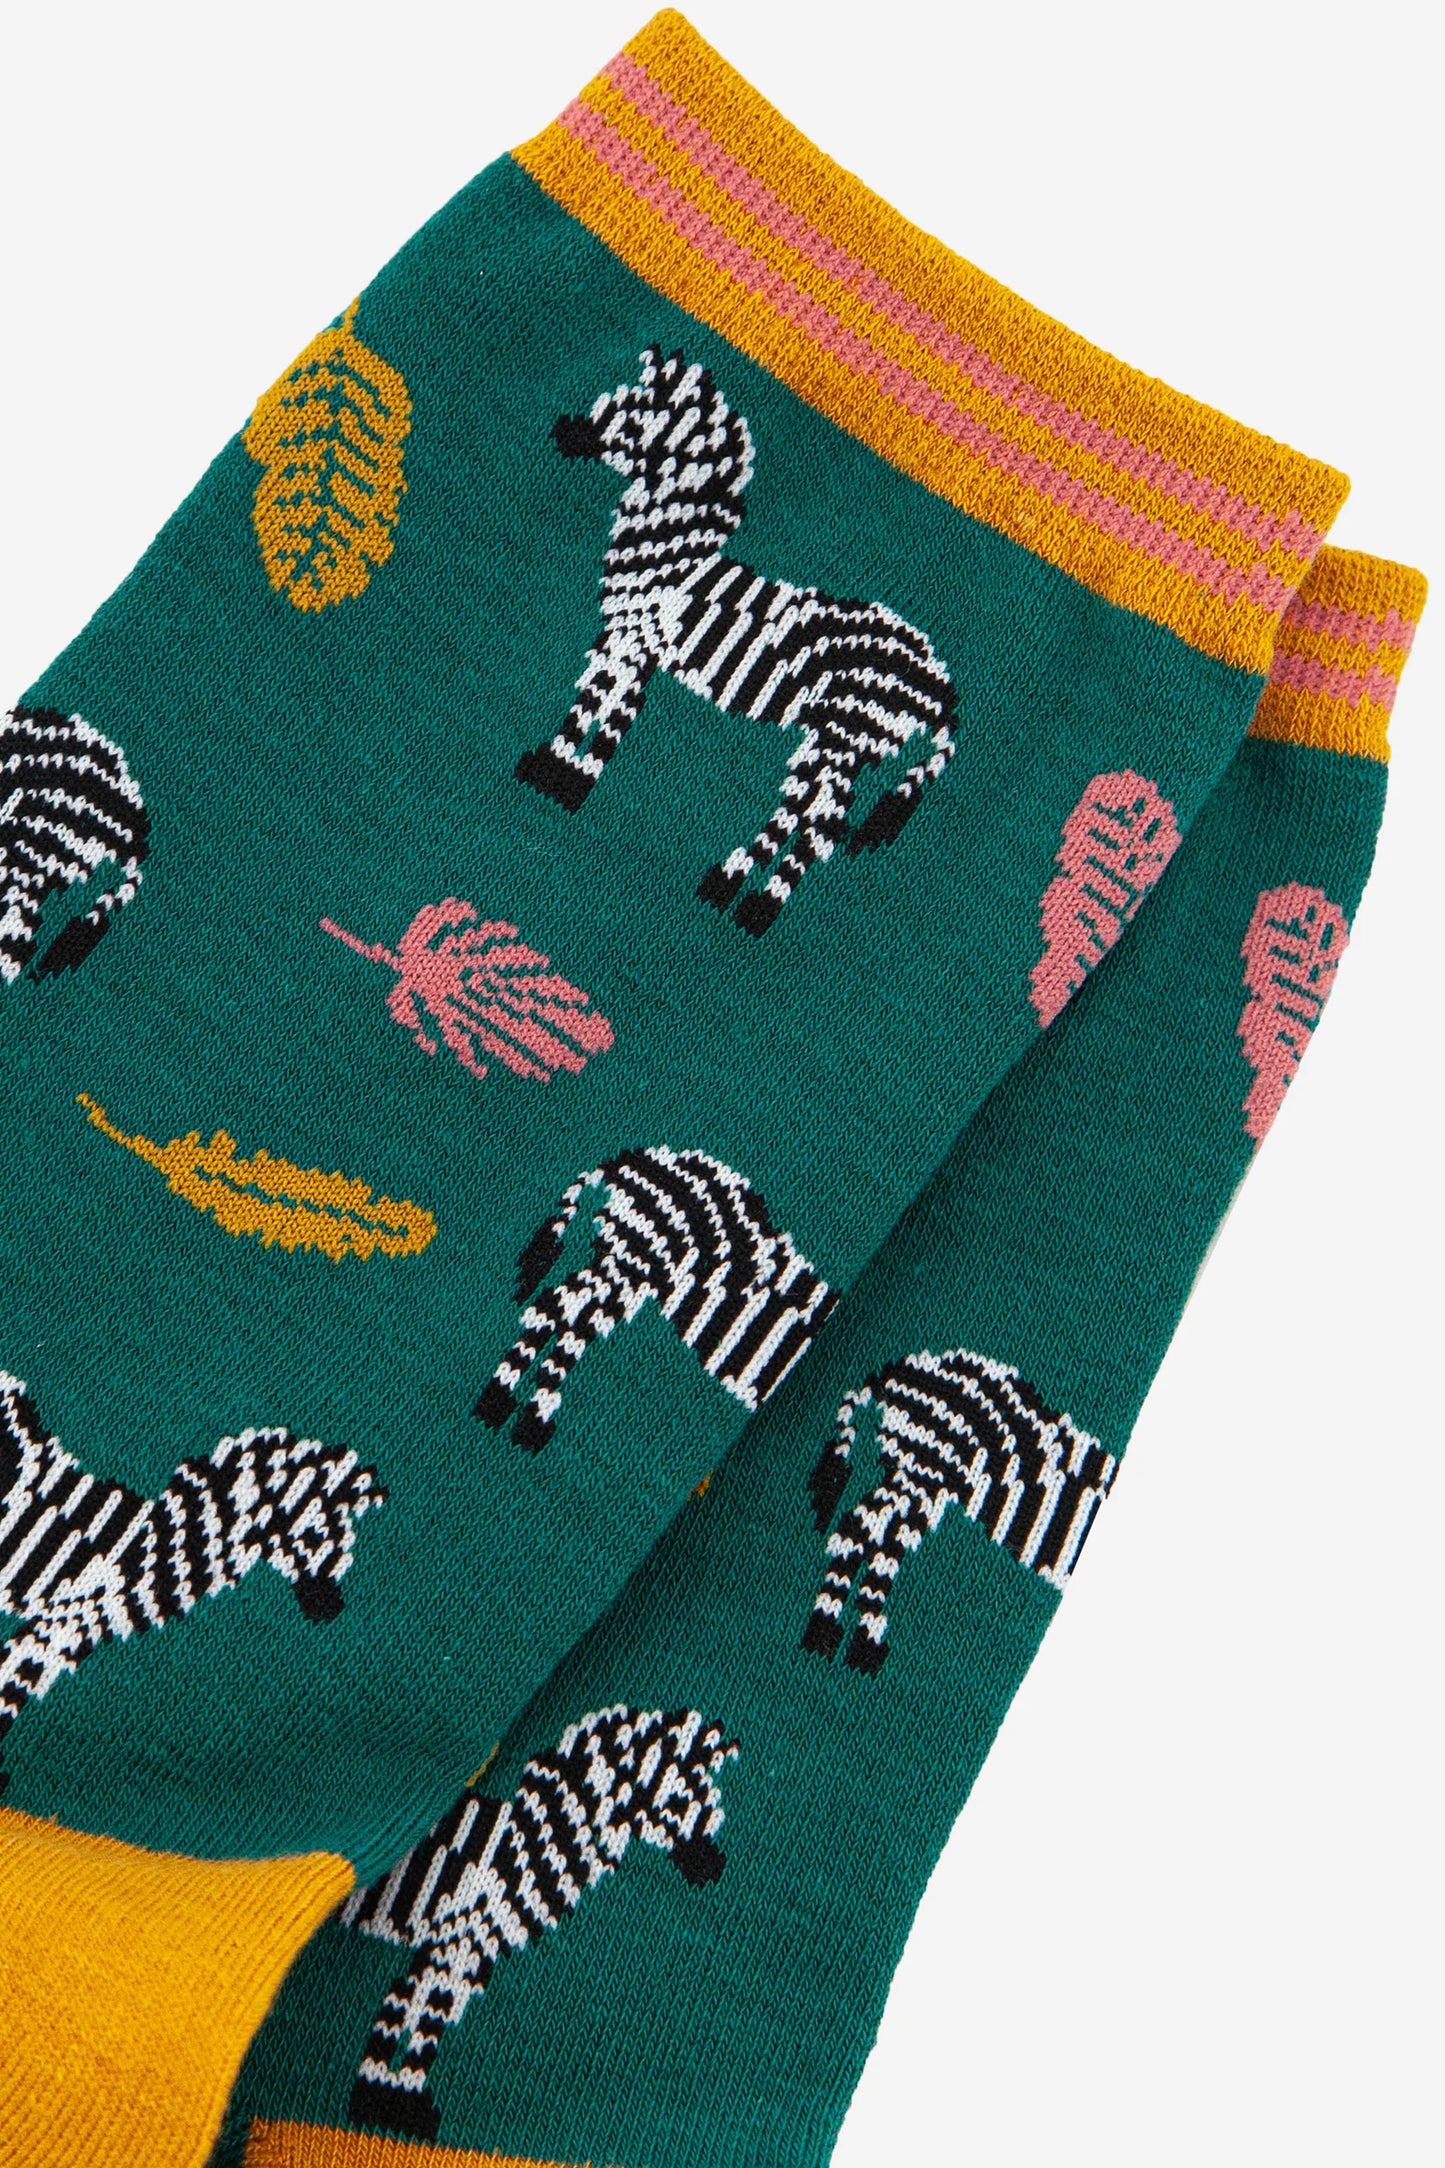 Leaf and Zebra Print Bamboo Socks - Green/Mustard